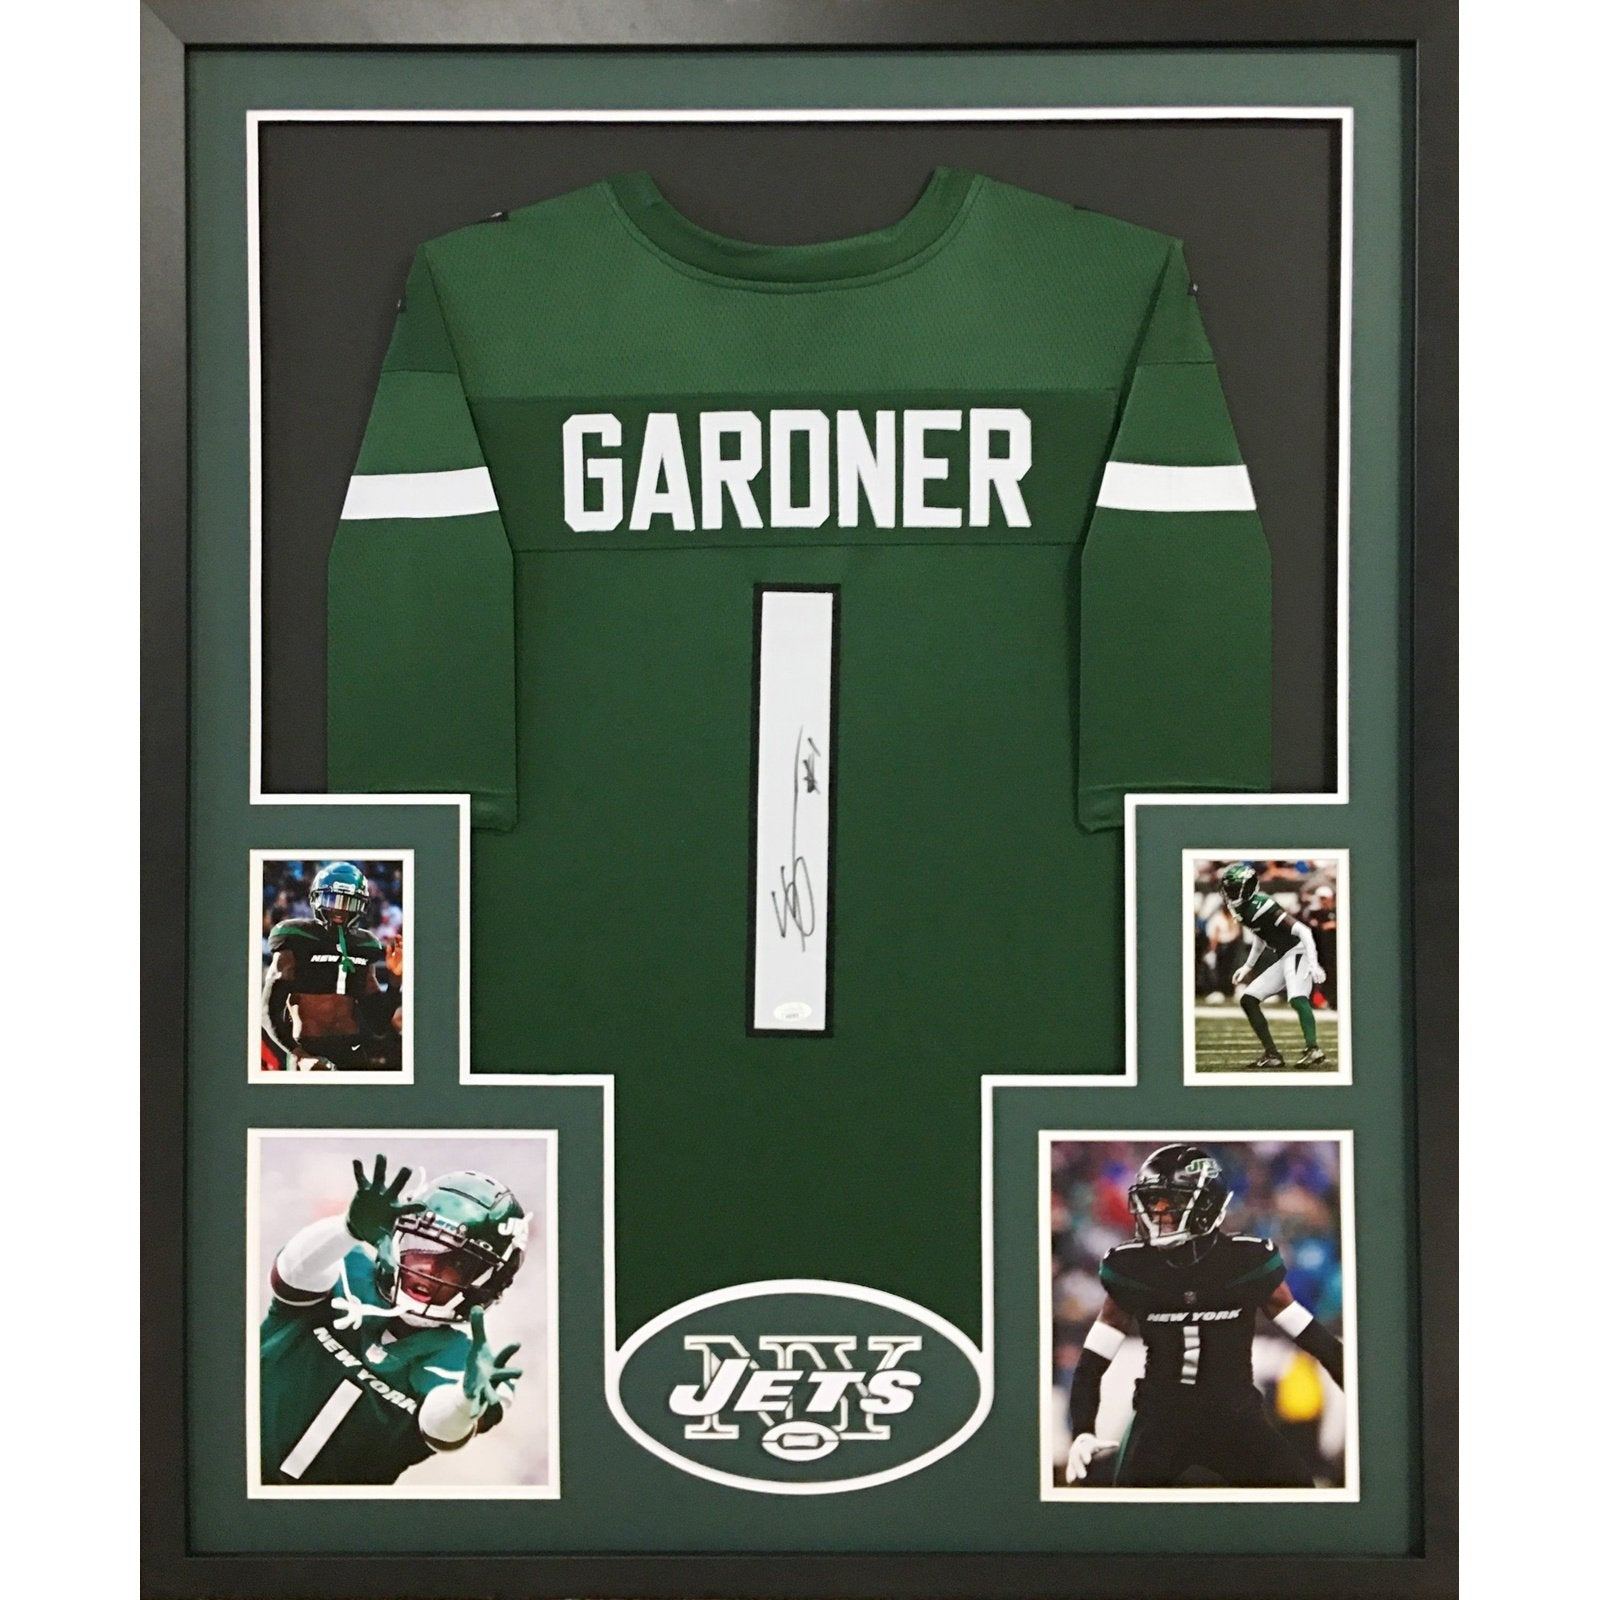 Sauce Gardner Signed Framed Green Jersey JSA Autographed New York Jets